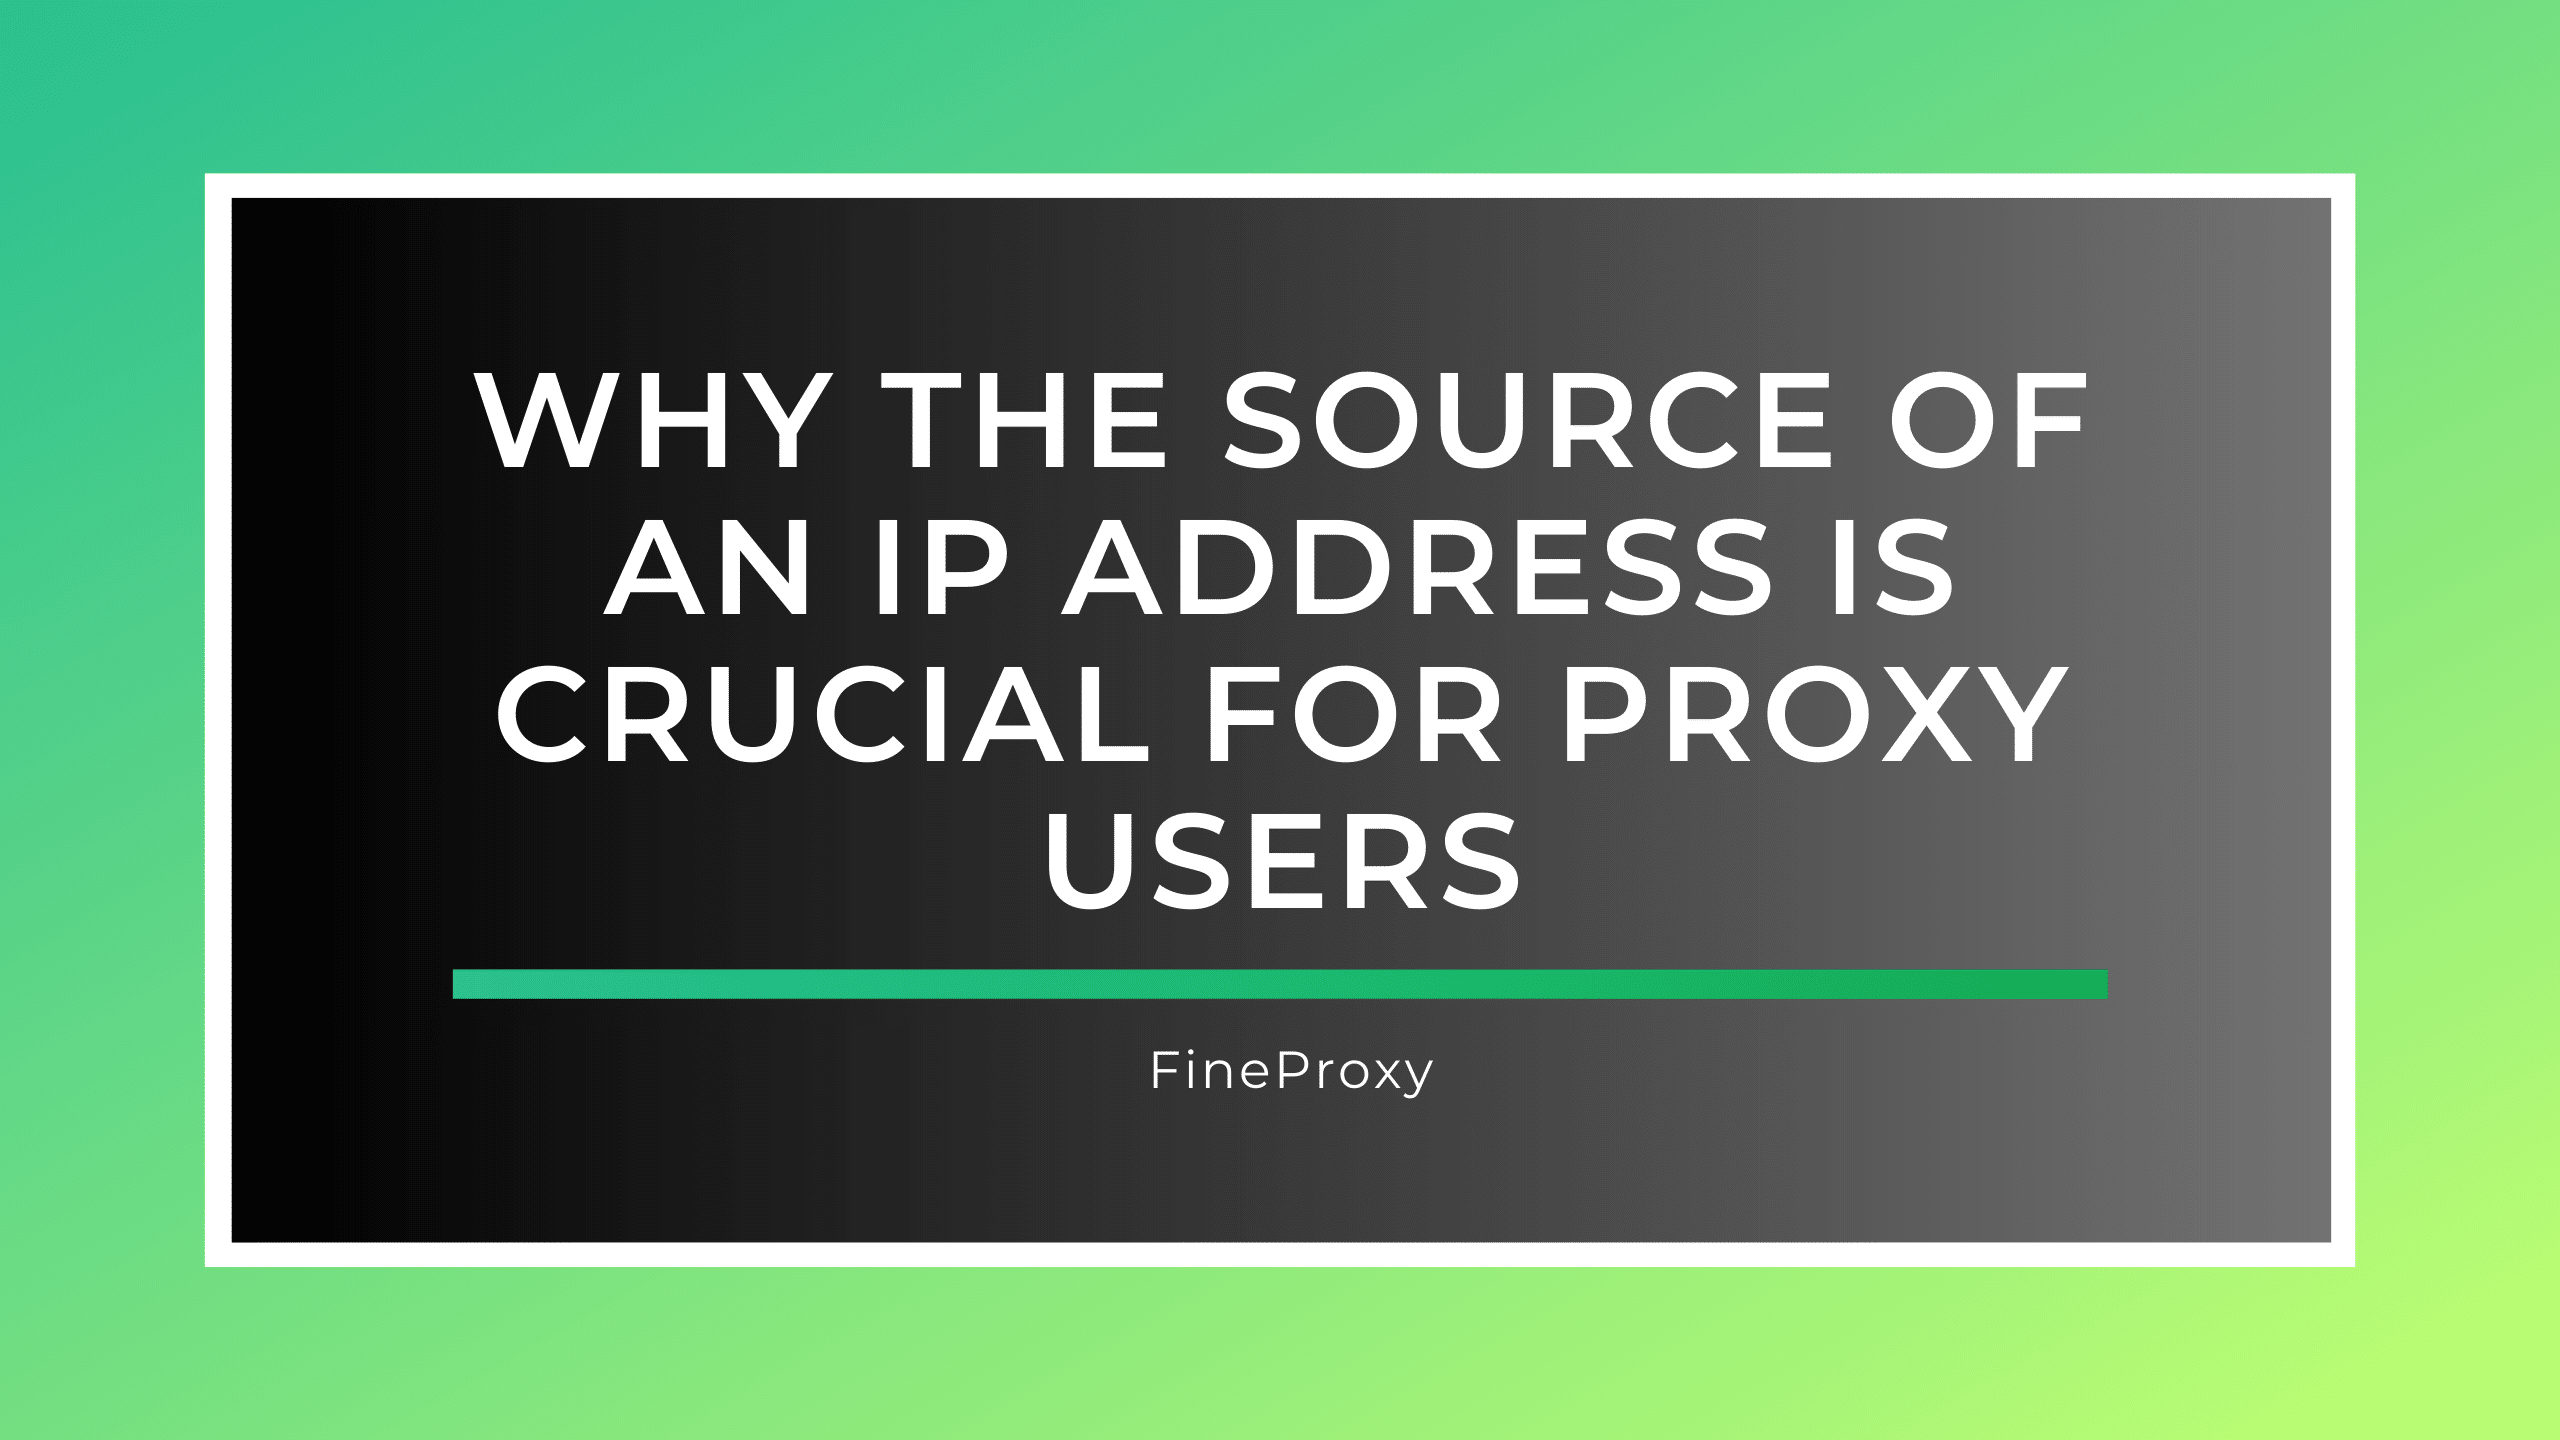 प्रॉक्सी उपयोगकर्ताओं के लिए IP पते का स्रोत महत्वपूर्ण क्यों है